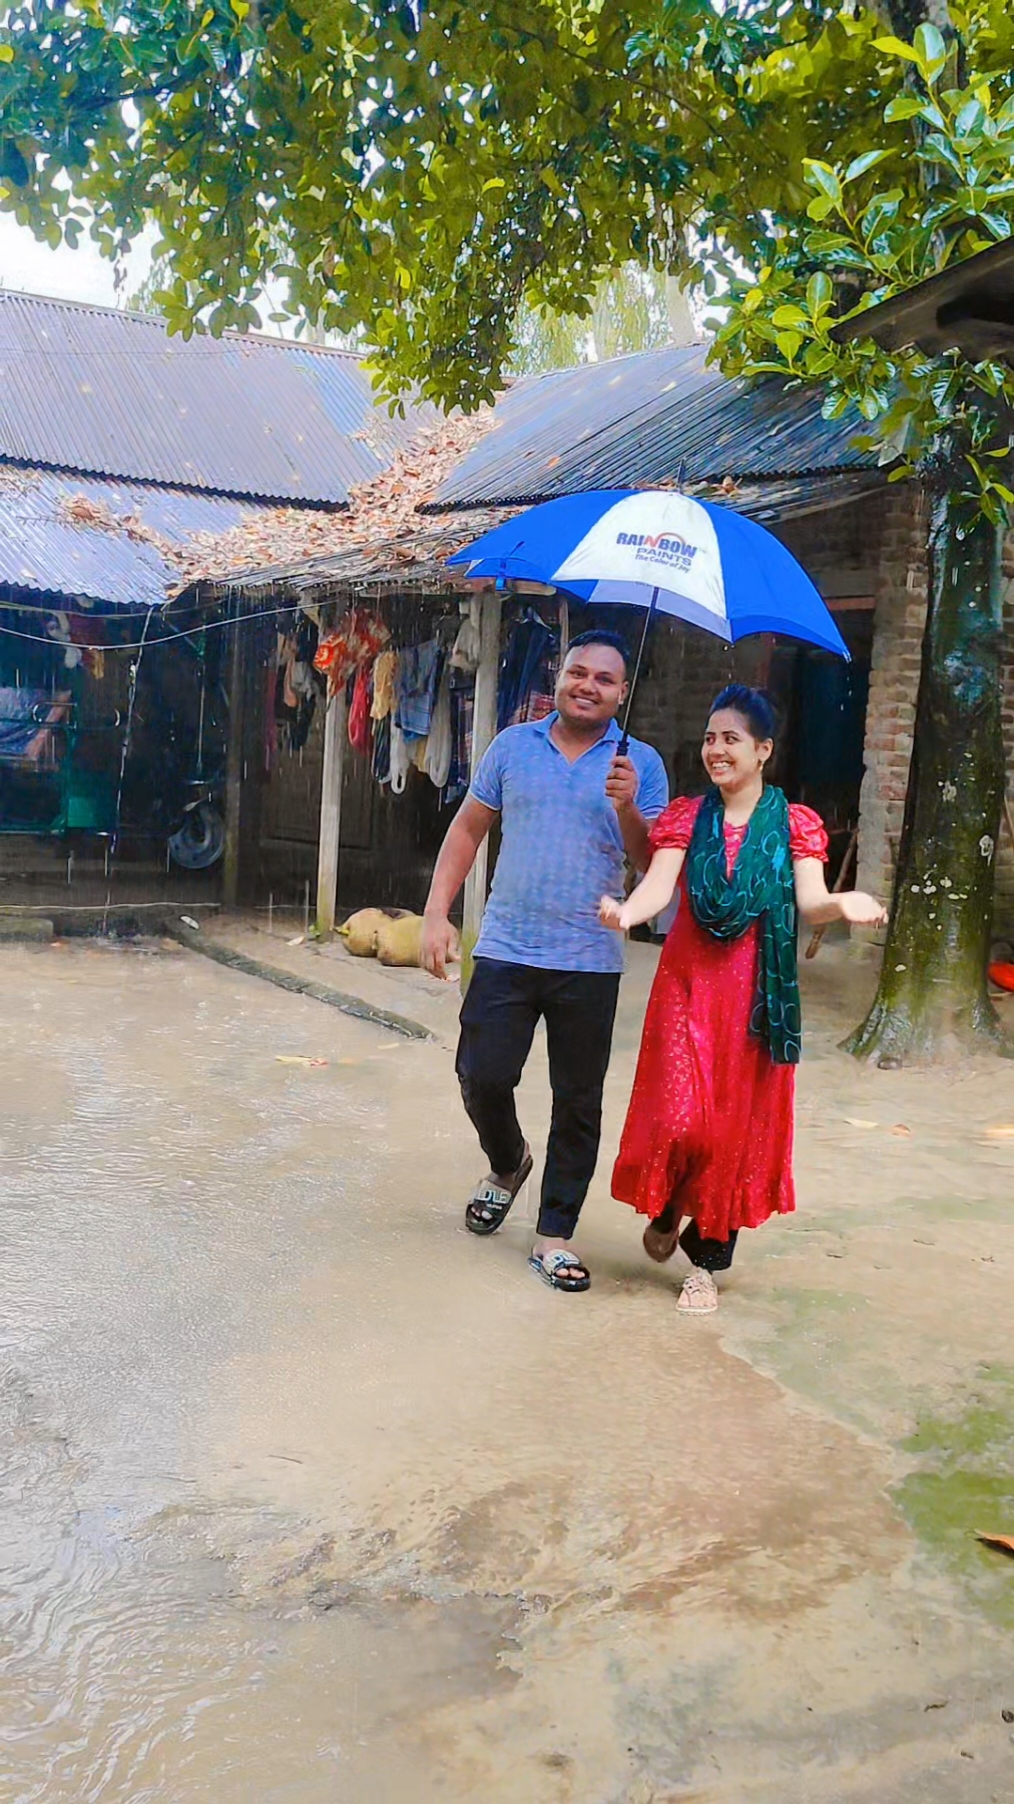 আমাদের দিনাজপুরে বৃষ্টি হচ্ছে 😜#নতুন_ভিডিও_পেতে_লাইক_ফলো_শেয়ার_করুন #foryou #foryoupage #ashamoni63500 #trending @🔥Asha Moni🔥 @TikTok Bangladesh 